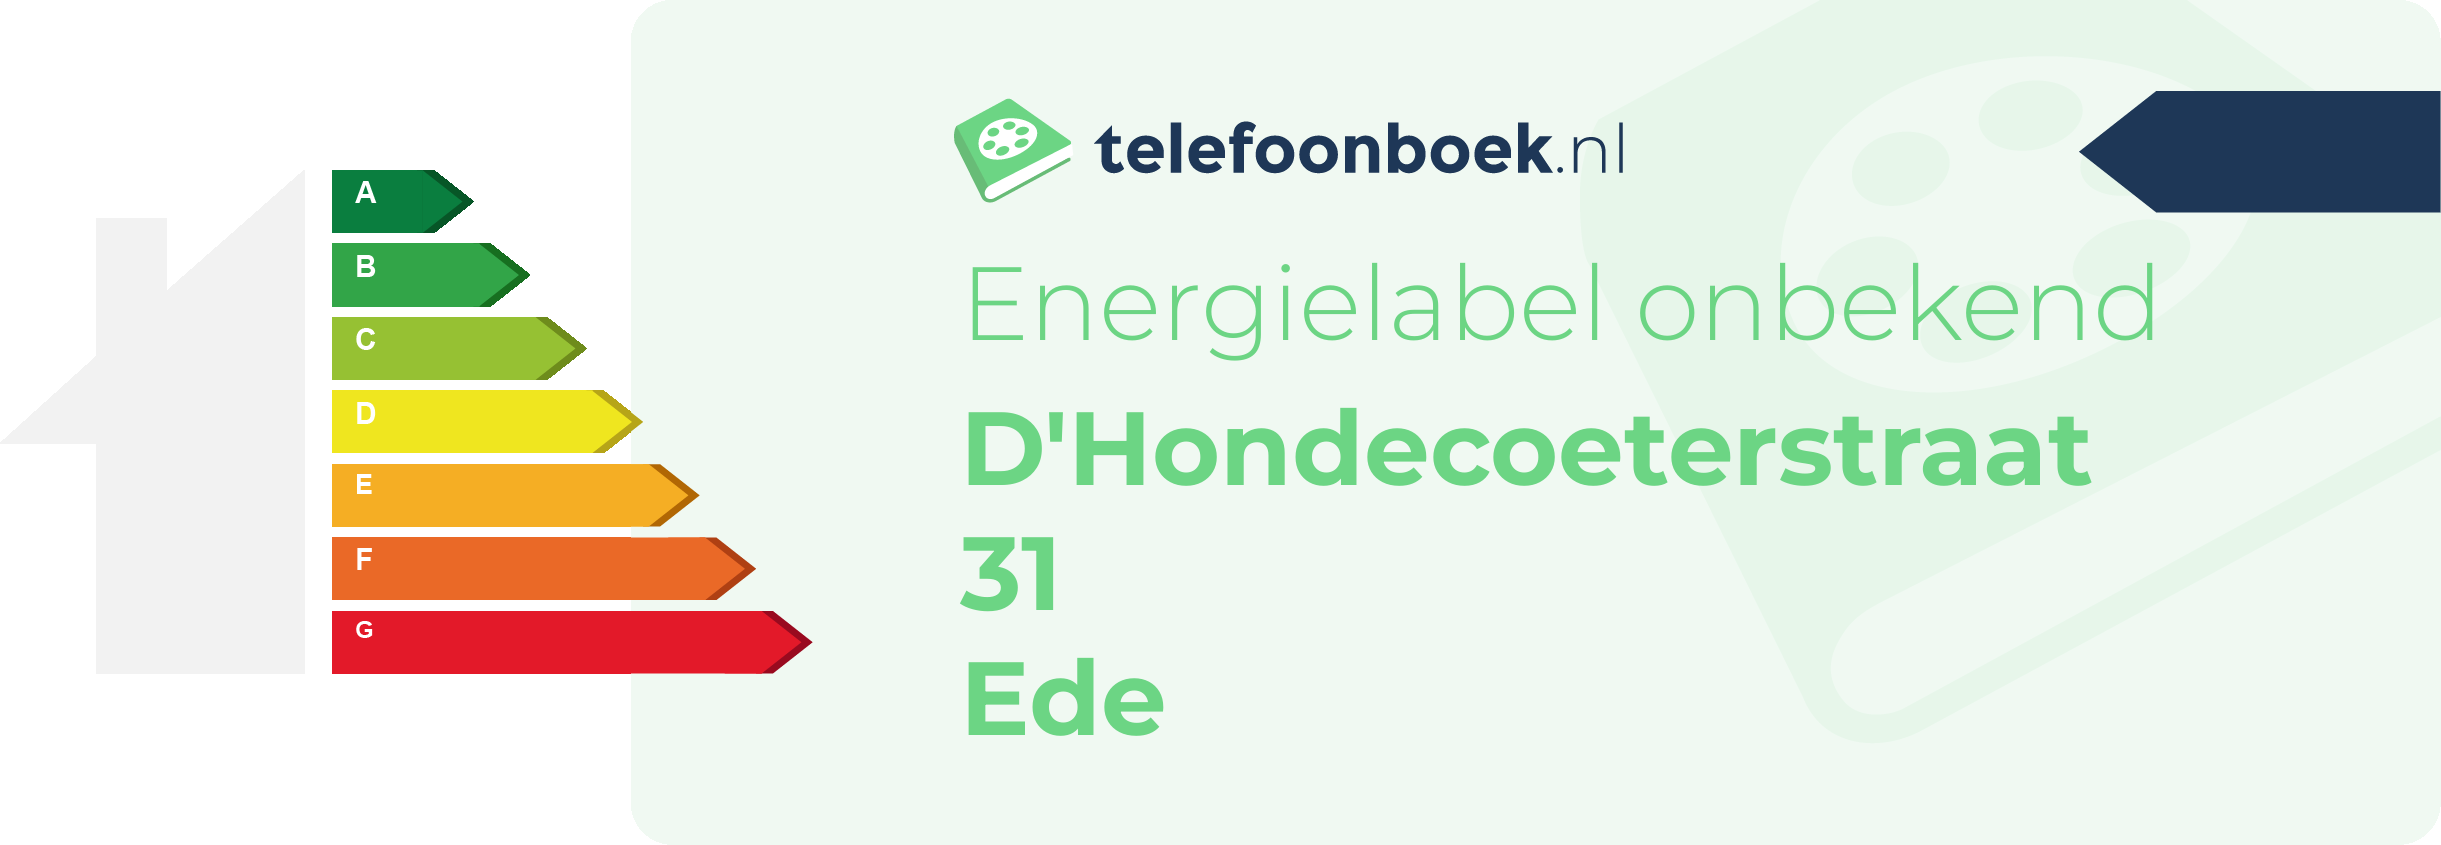 Energielabel D'Hondecoeterstraat 31 Ede